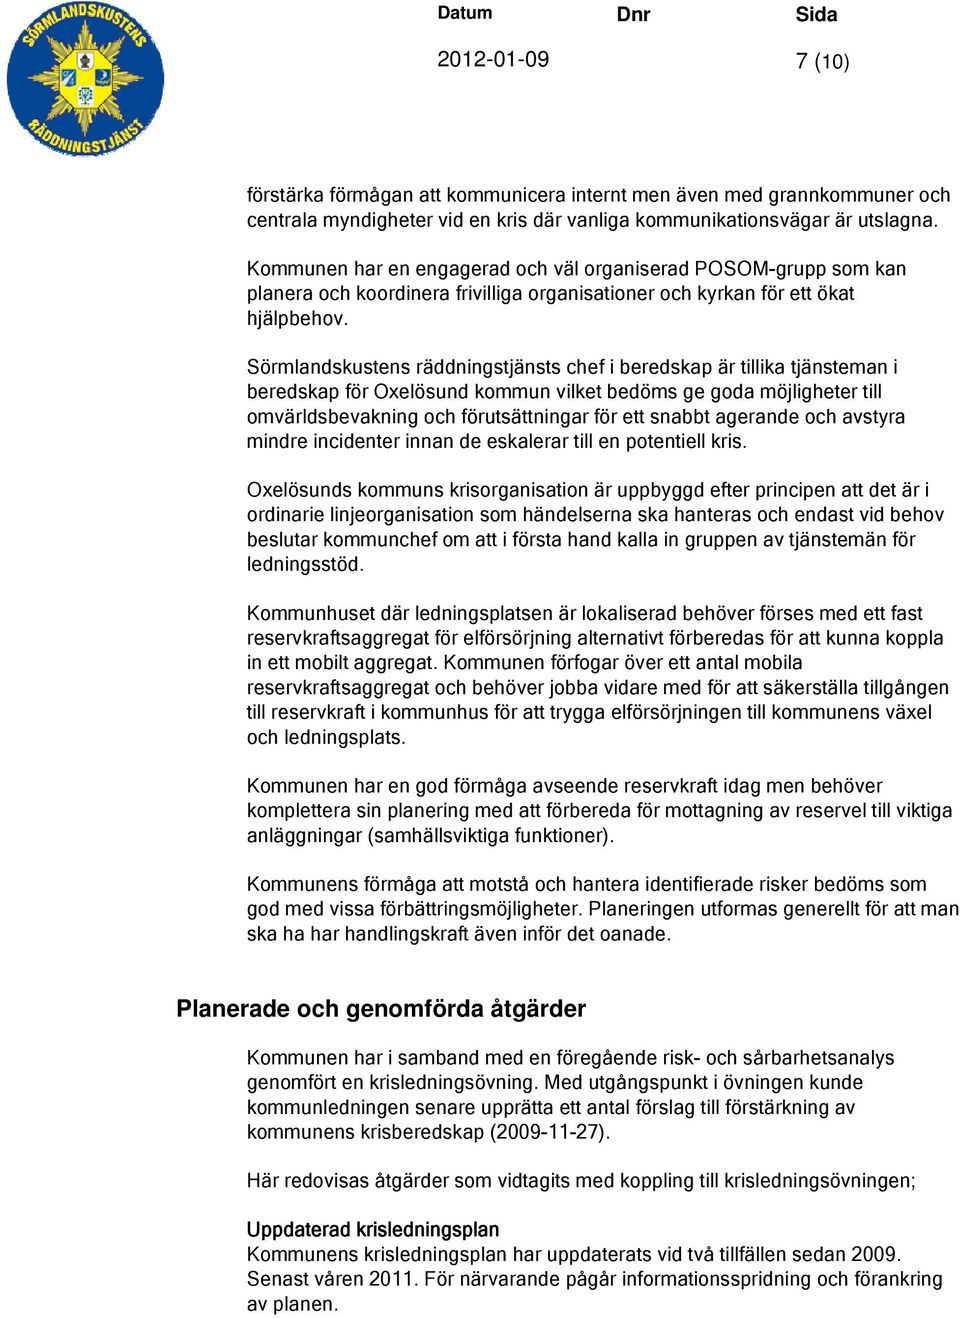 Sörmlandskustens räddningstjänsts chef i beredskap är tillika tjänsteman i beredskap för Oxelösund kommun vilket bedöms ge goda möjligheter till omvärldsbevakning och förutsättningar för ett snabbt